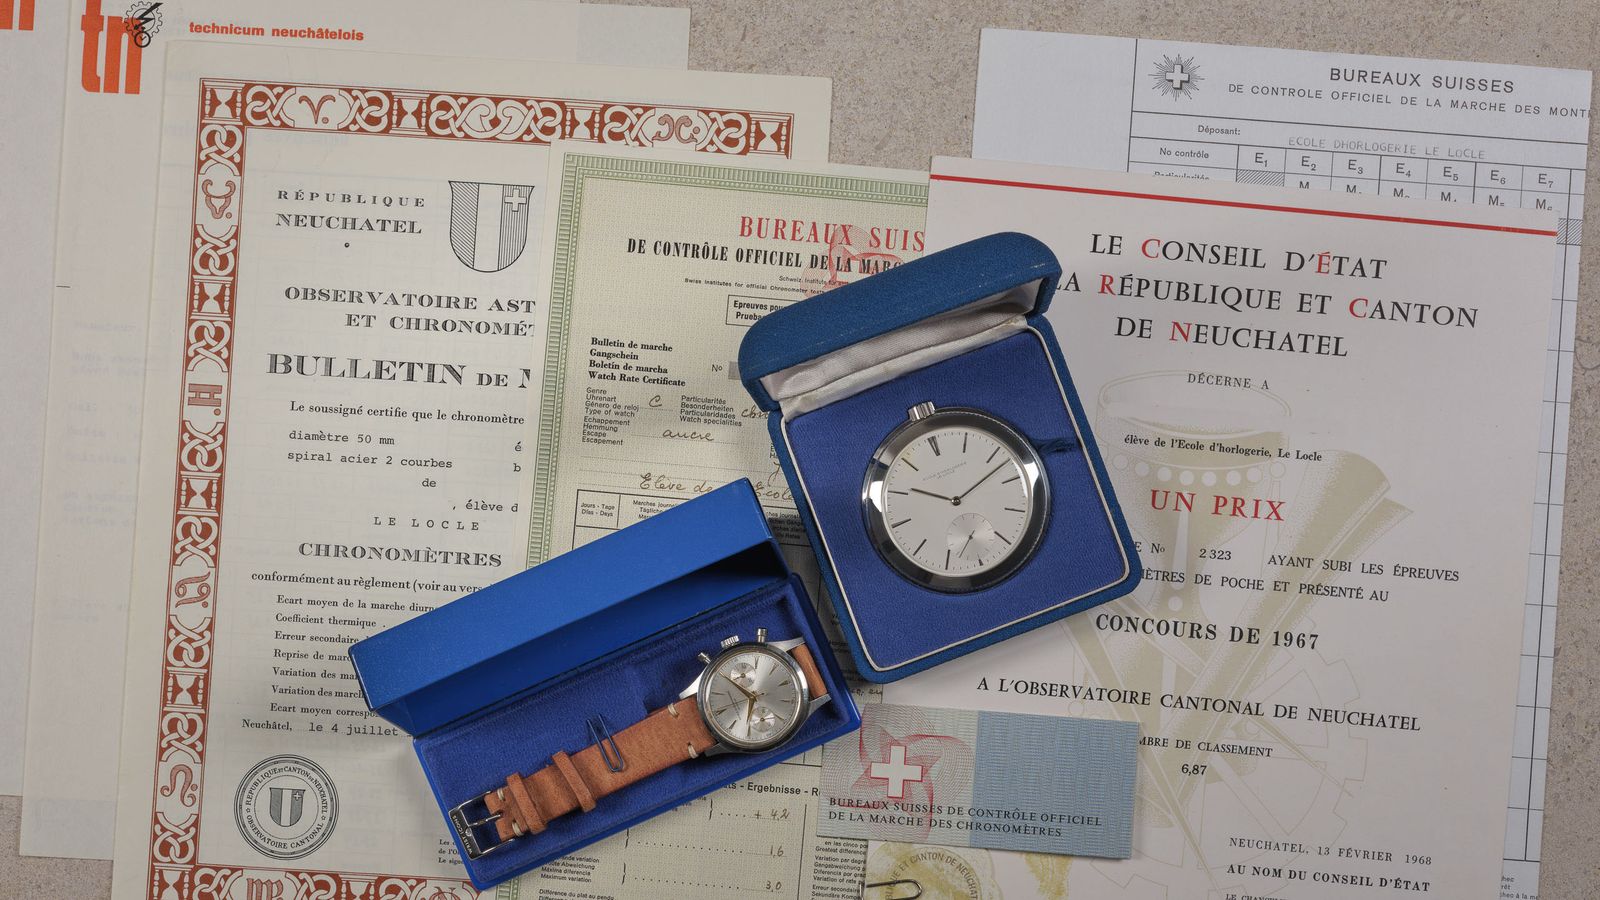 Ecole d’Horlogerie Le Locle Ecole d’Horlogerie Le Locle observatory chronometer pocket watch and wristwatch chronometer chronograph full set